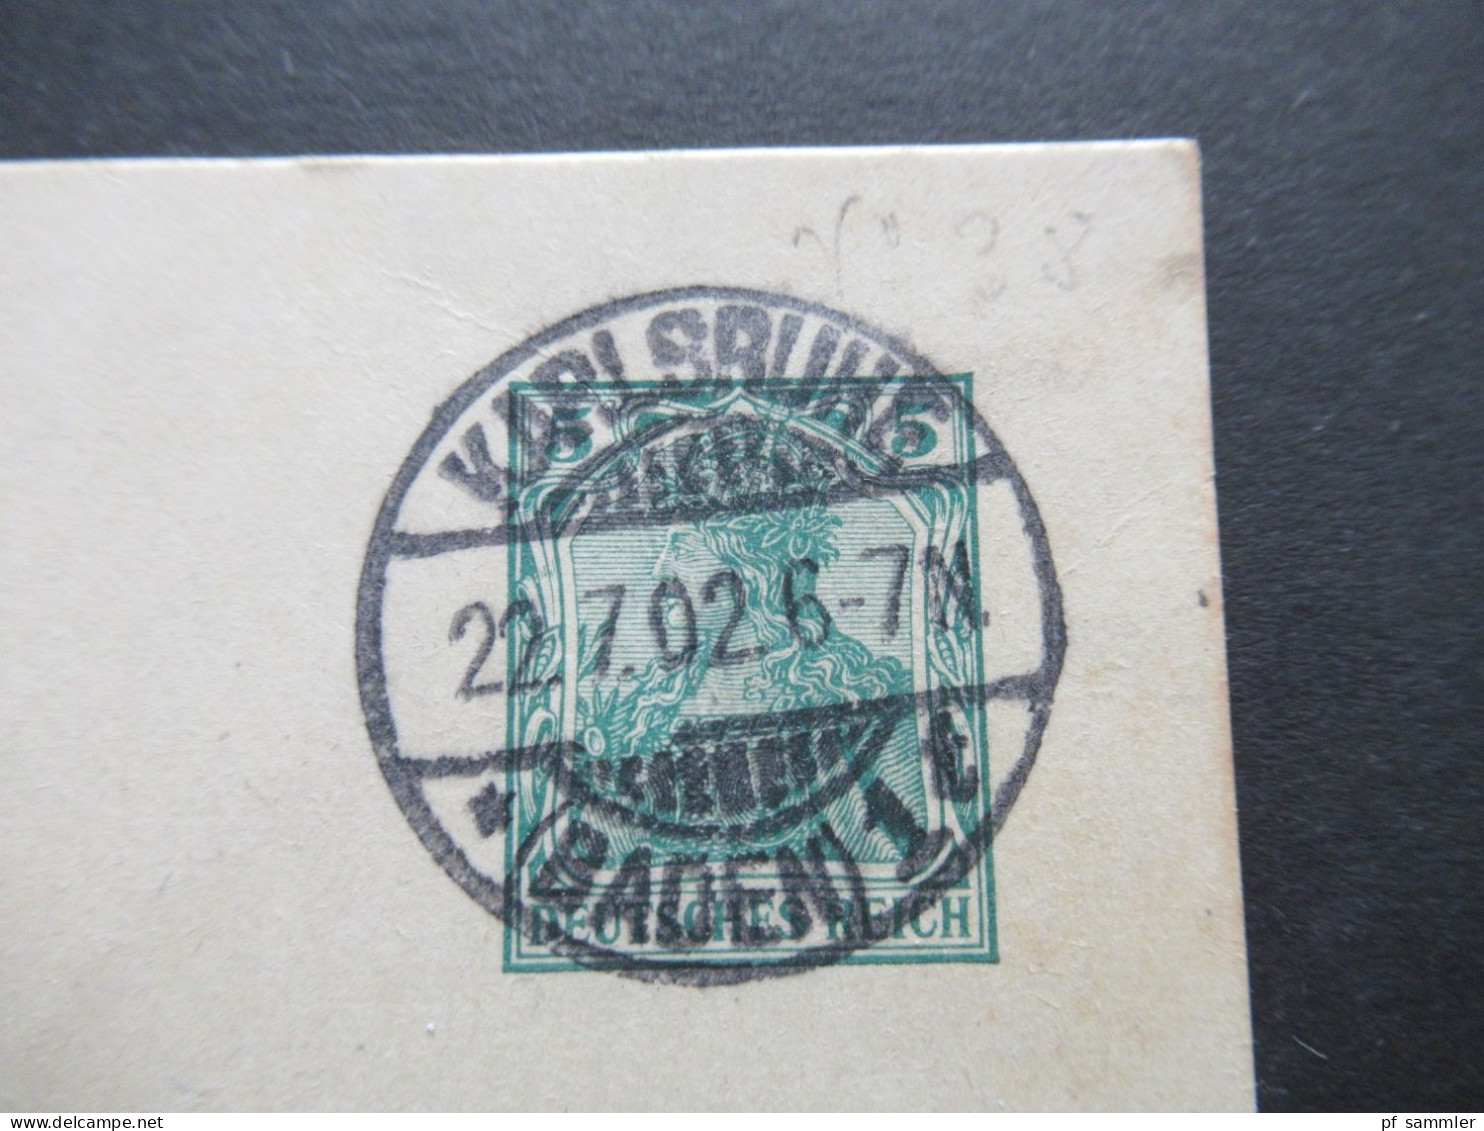 DR 1902 Germania Ganzsache Mit 2 Klaren / Sauberen Stempeln Karlsruhe (Baden) Nach Baden-Baden Mit Ank. Stempel - Postcards